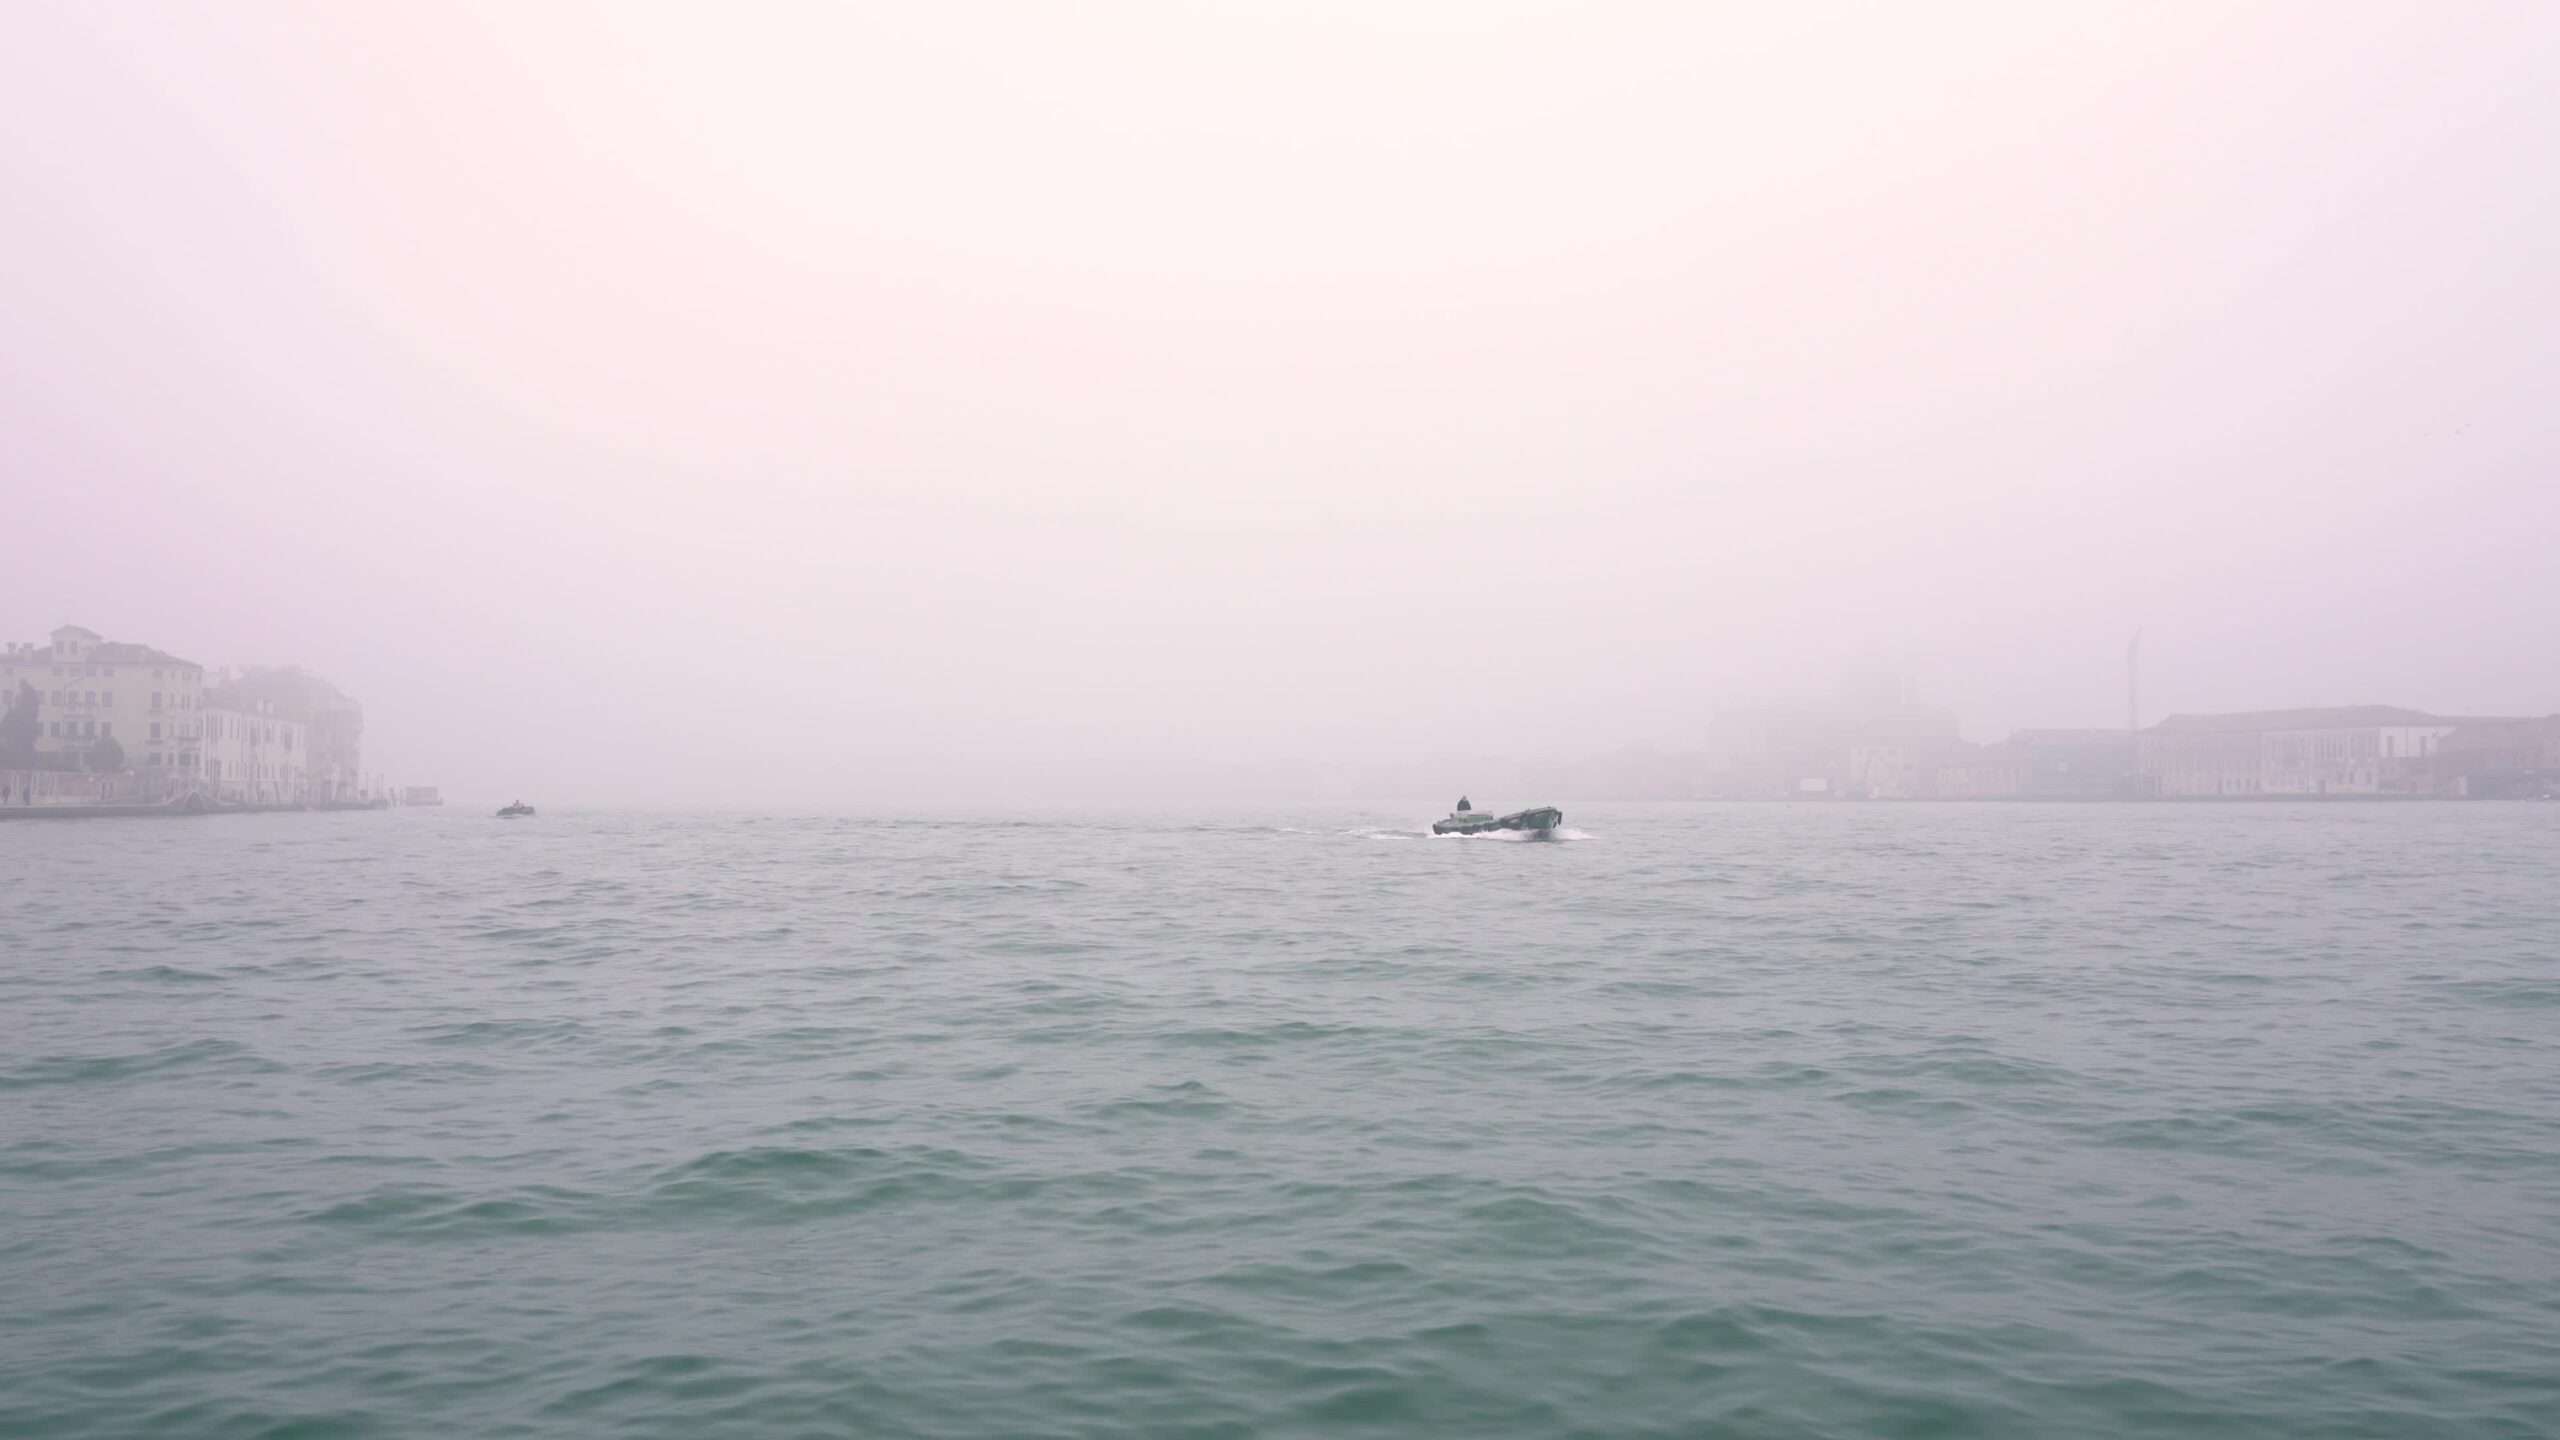 Piccolo motoscafo naviga sull’acqua della laguna veneta nella nebbia